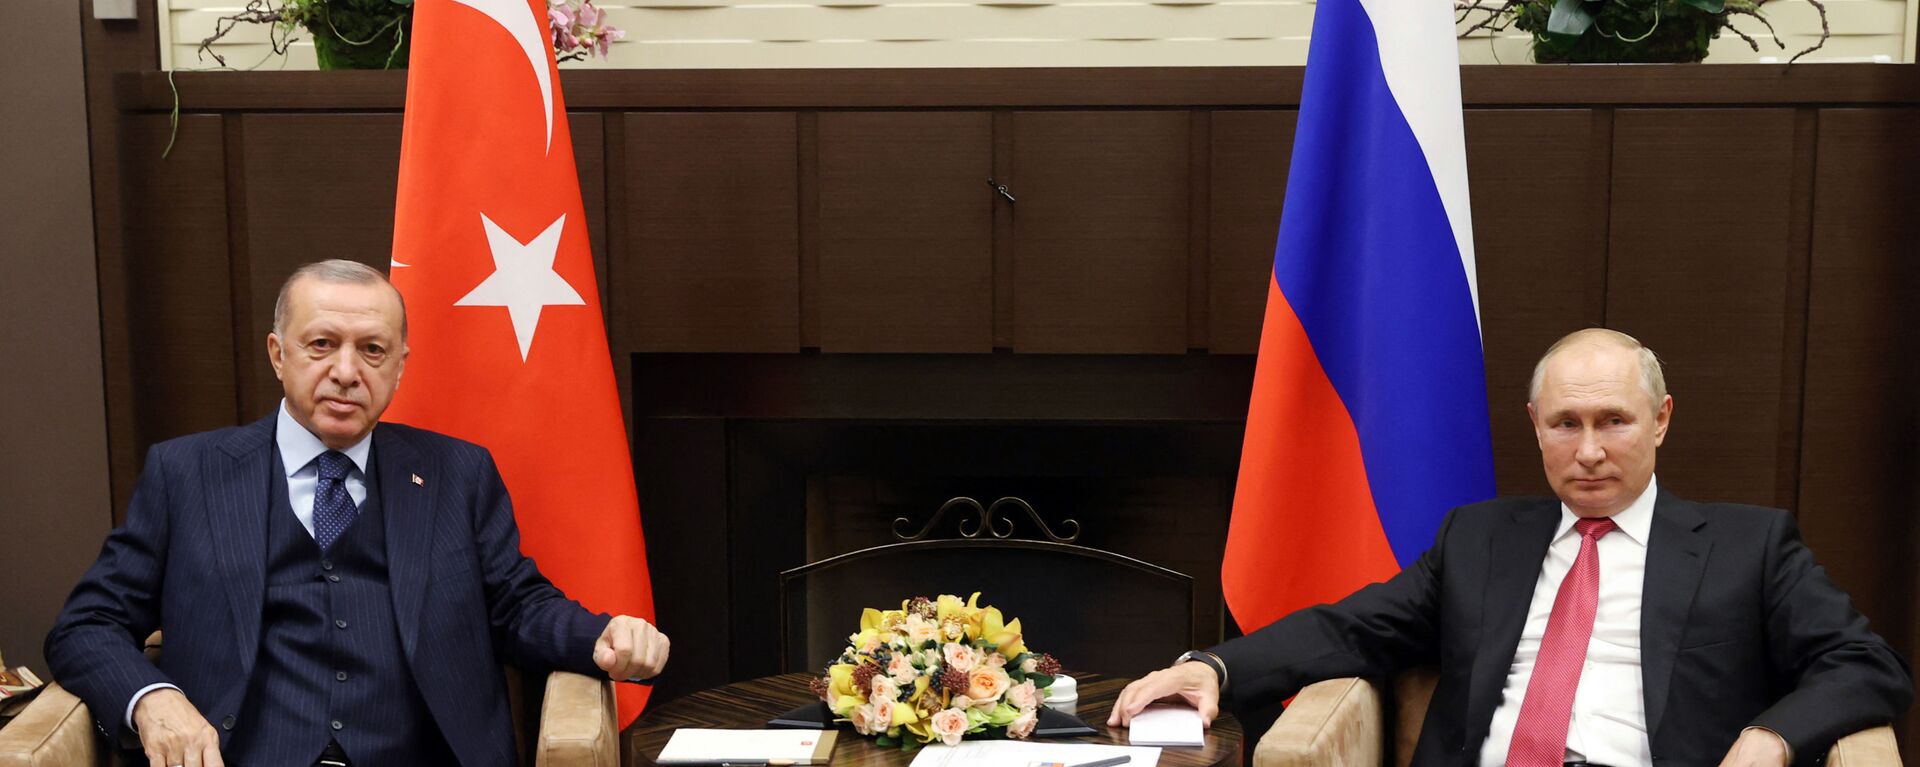 Tổng thống Nga Vladimir Putin tại cuộc gặp người đồng cấp Thổ Nhĩ Kỳ Tayyip Erdogan ở Sochi - Sputnik Việt Nam, 1920, 29.09.2021